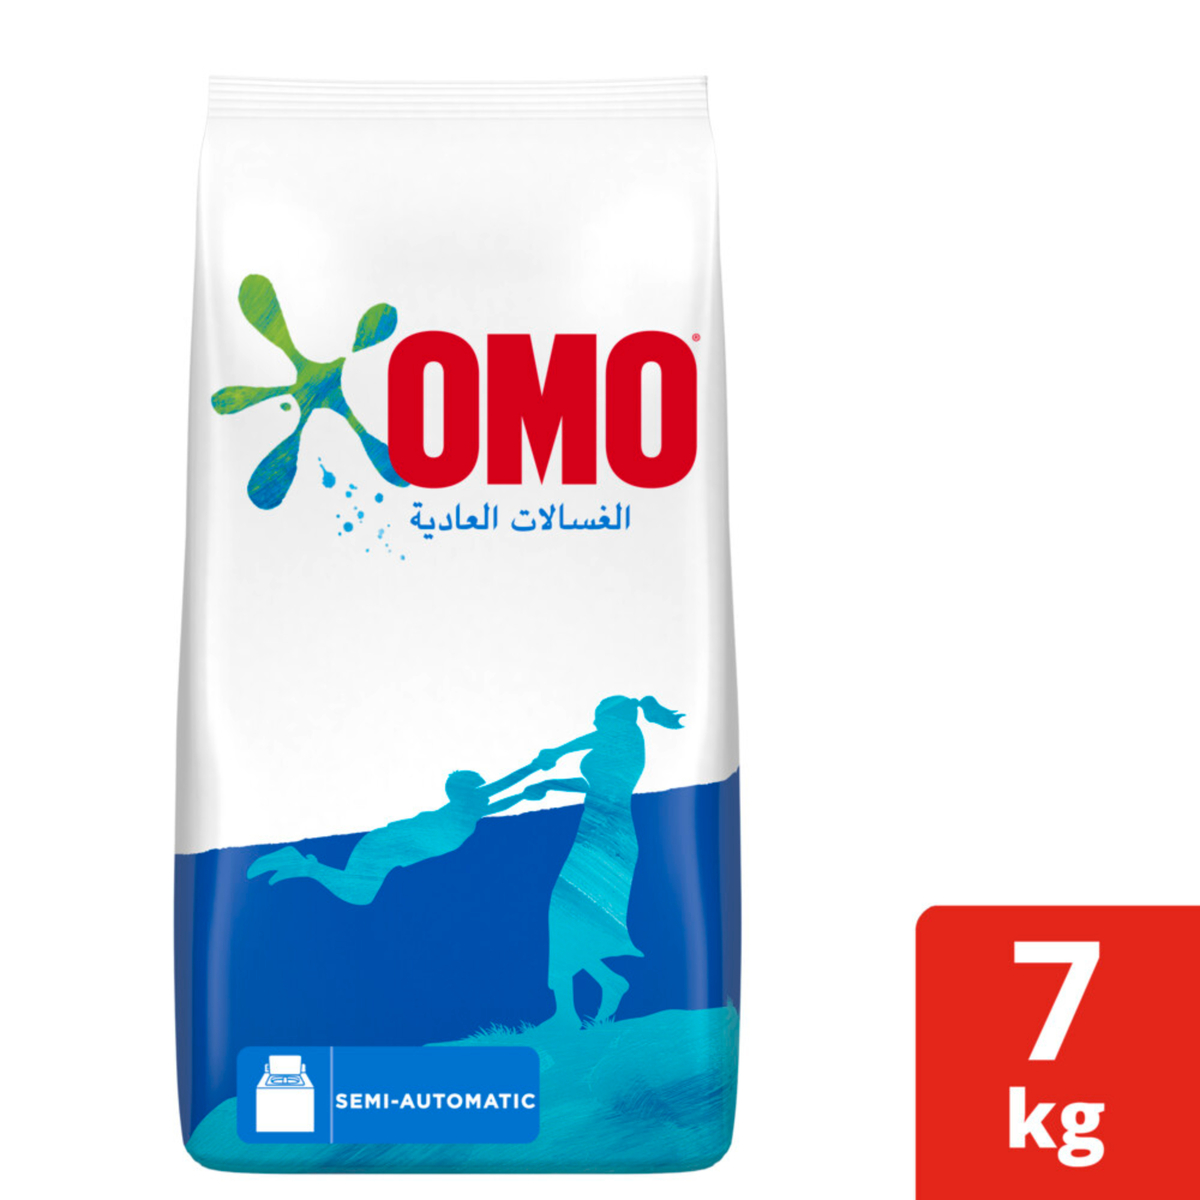 OMO Washing Powder Semi-Automatic Top Load 7kg